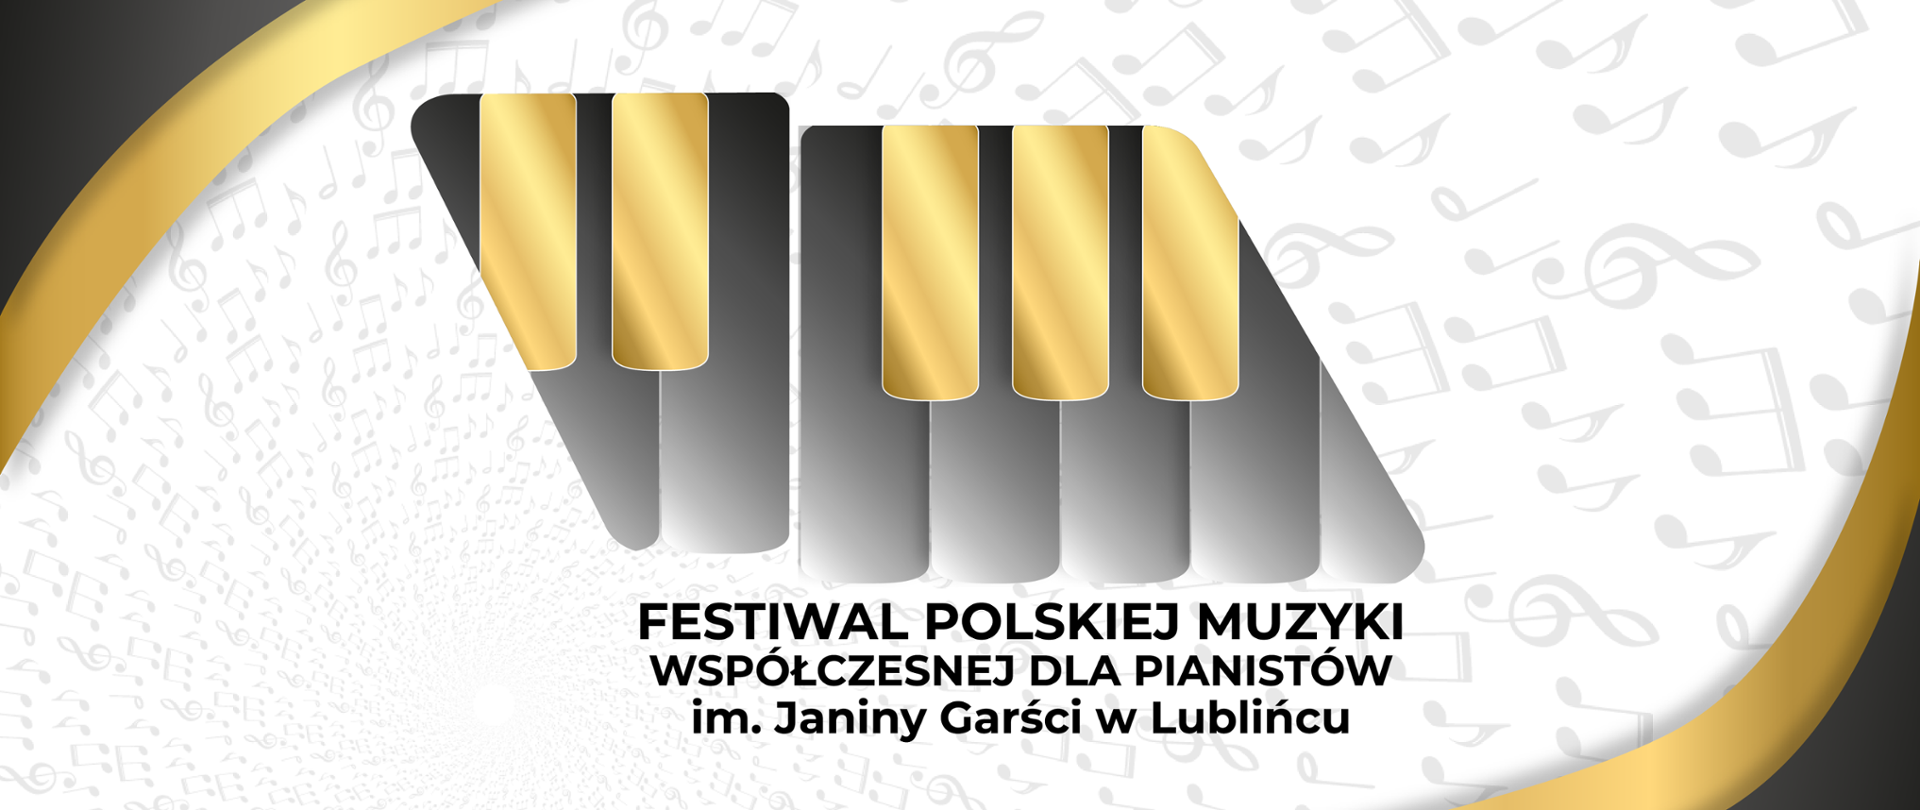 Plakat przedstawia Logo oraz Tytuł festiwalu Polskiej Muzyki Współczesnej dla Pianistów im. Janiny Garści w Lublińcu.